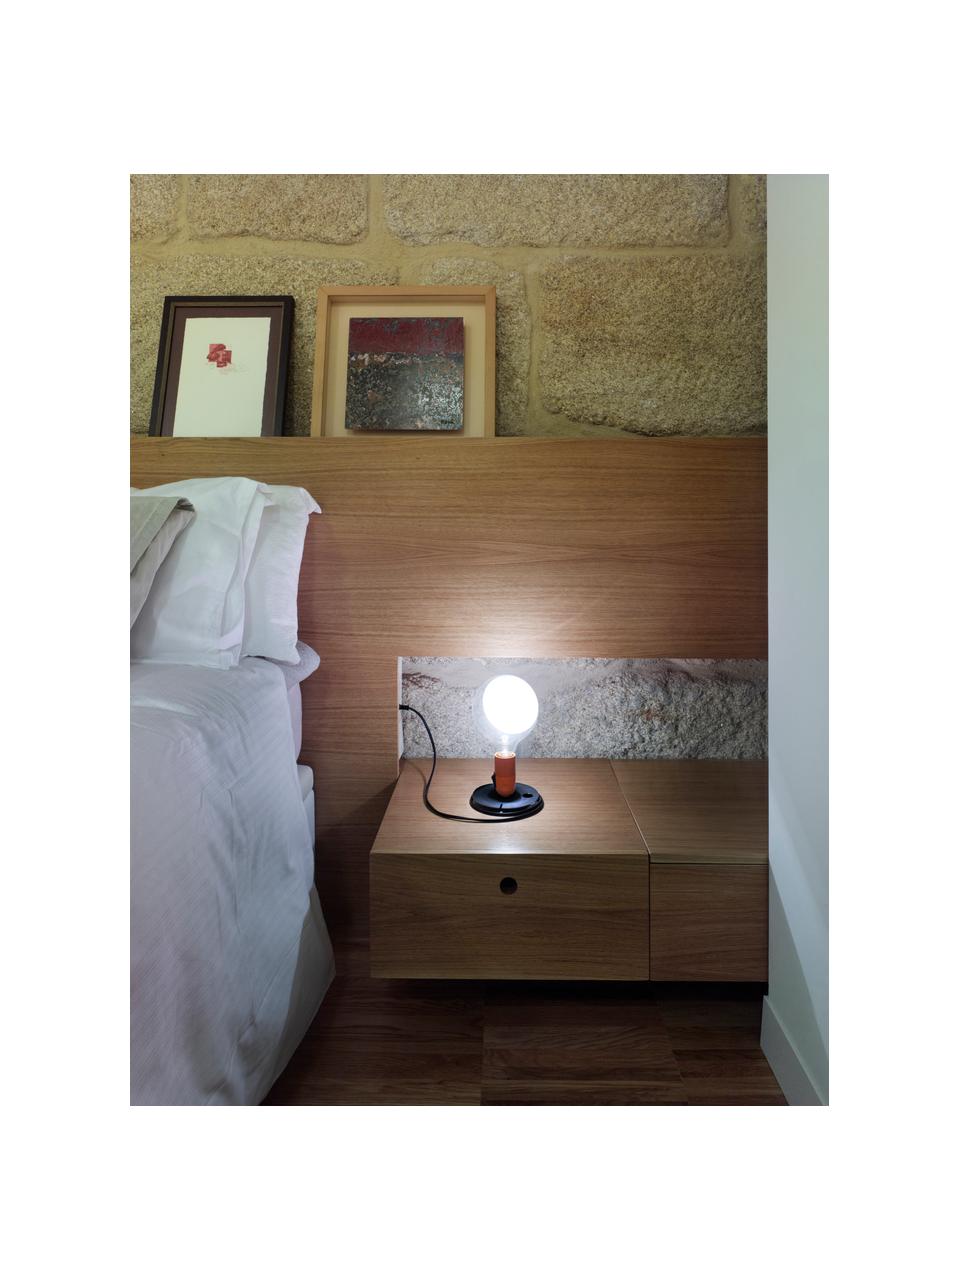 Kleine Tischlampe Lampadina, Lampenschirm: Glas, Orange, Ø 15 x H 25 cm